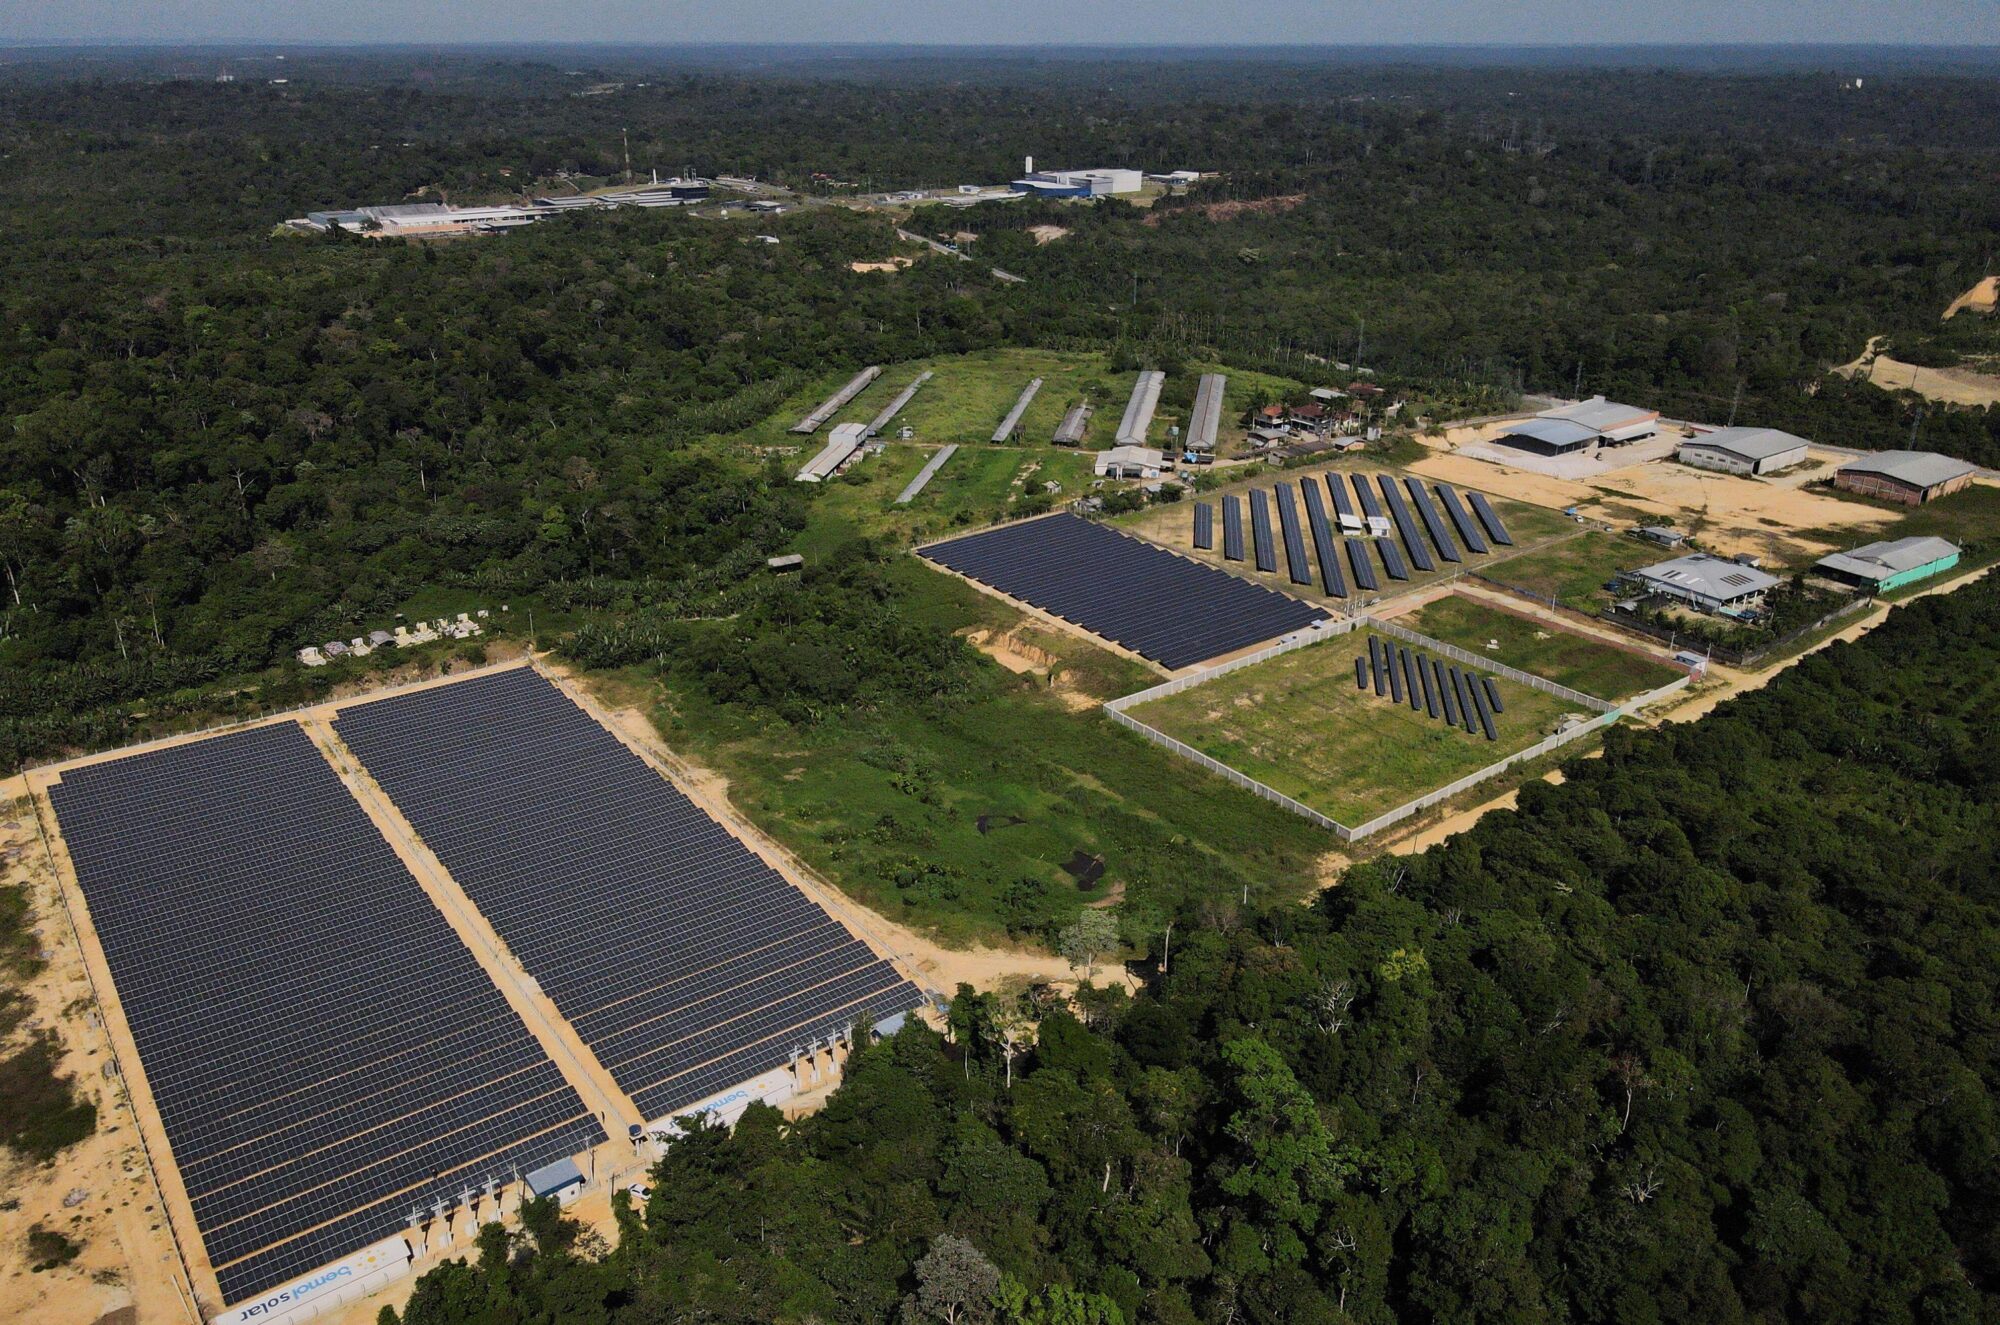 <p>Planta de energía solar de Bemol cerca de Manaos, en el estado de Amazonas. La expansión de la energía solar en el Norte puede beneficiar no sólo a las pequeñas comunidades sin acceso a la electricidad, sino también reducir los costos y aumentar la competitividad de las grandes empresas (Imagen: Bruno Kelly / Alamy)</p>